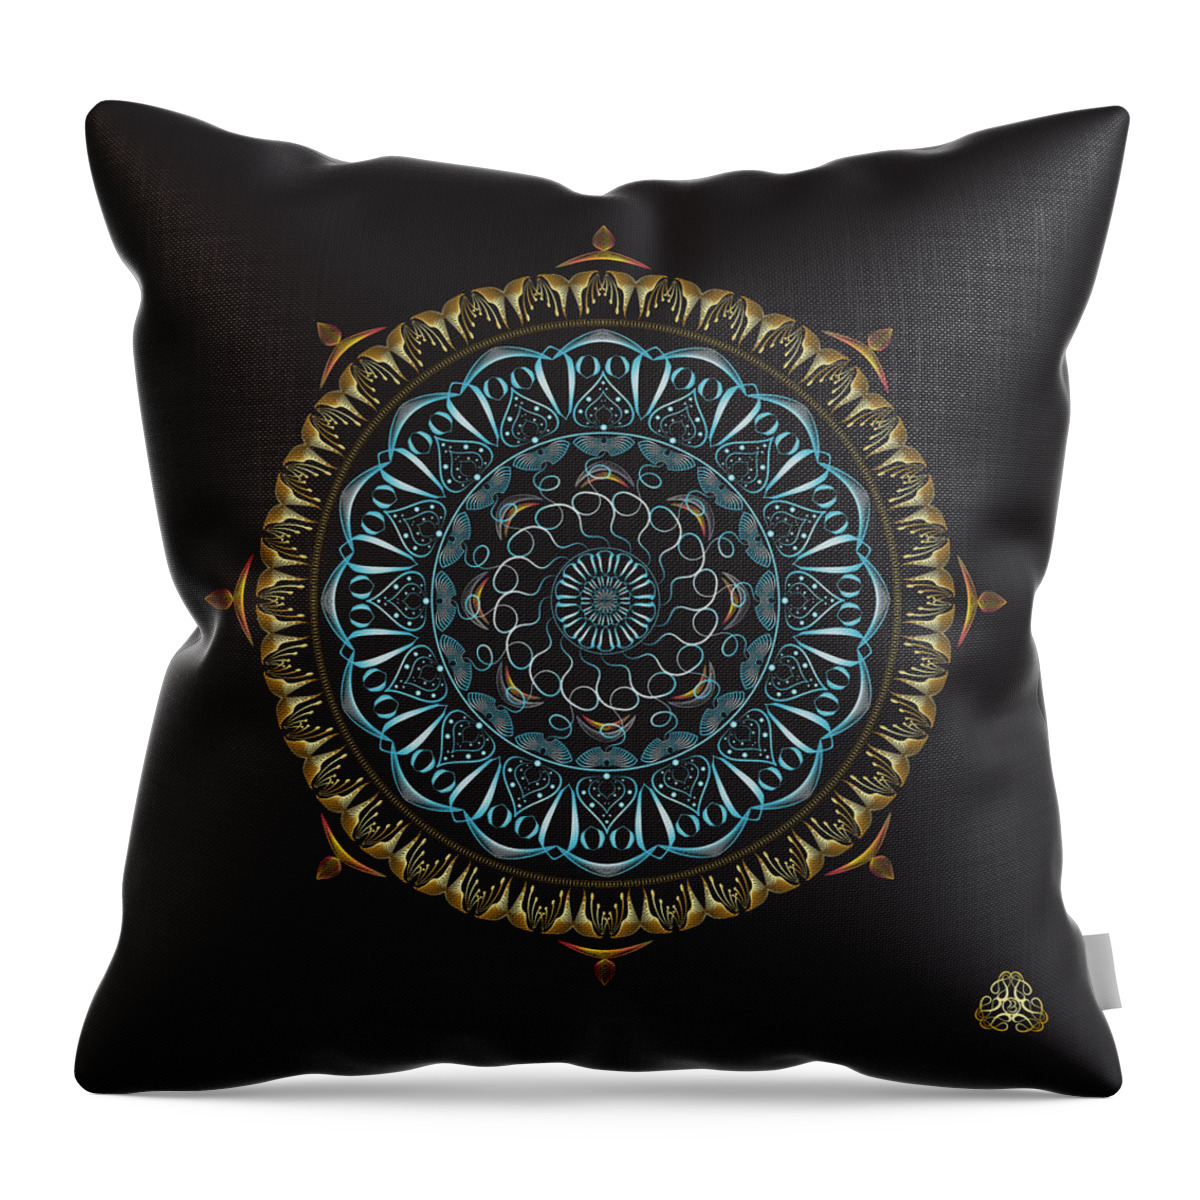 Mandala Throw Pillow featuring the digital art KUKLOS No 4341 by Alan Bennington